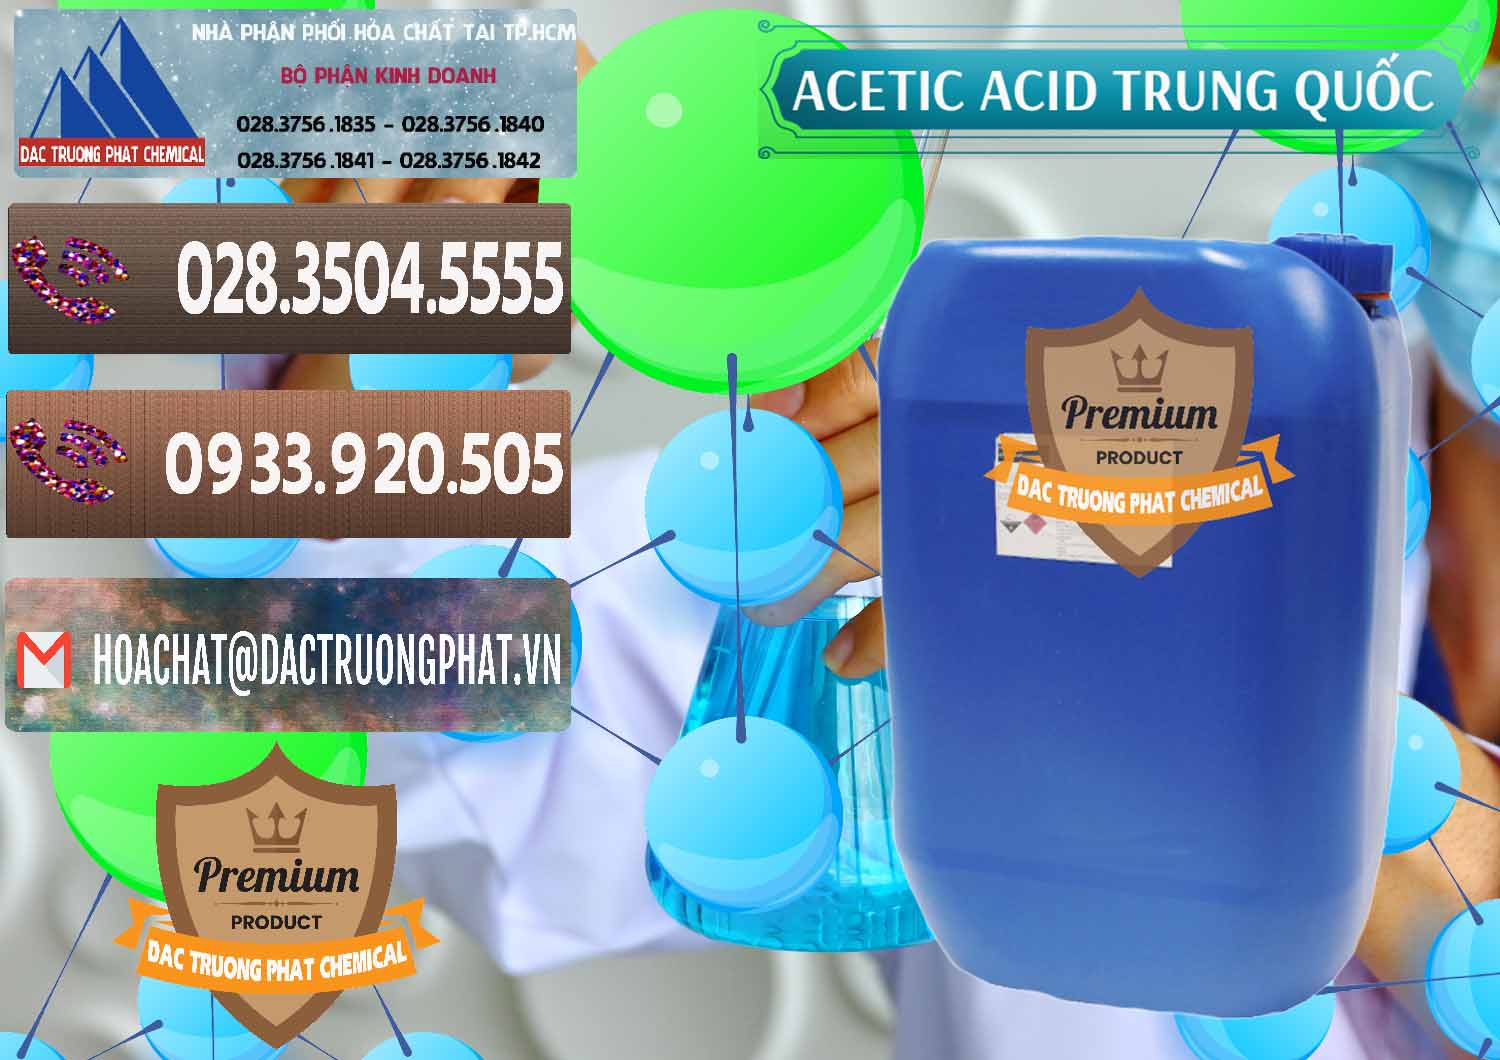 Nơi chuyên kinh doanh ( bán ) Acetic Acid – Axit Acetic Trung Quốc China - 0358 - Chuyên cung cấp & phân phối hóa chất tại TP.HCM - hoachatviet.net